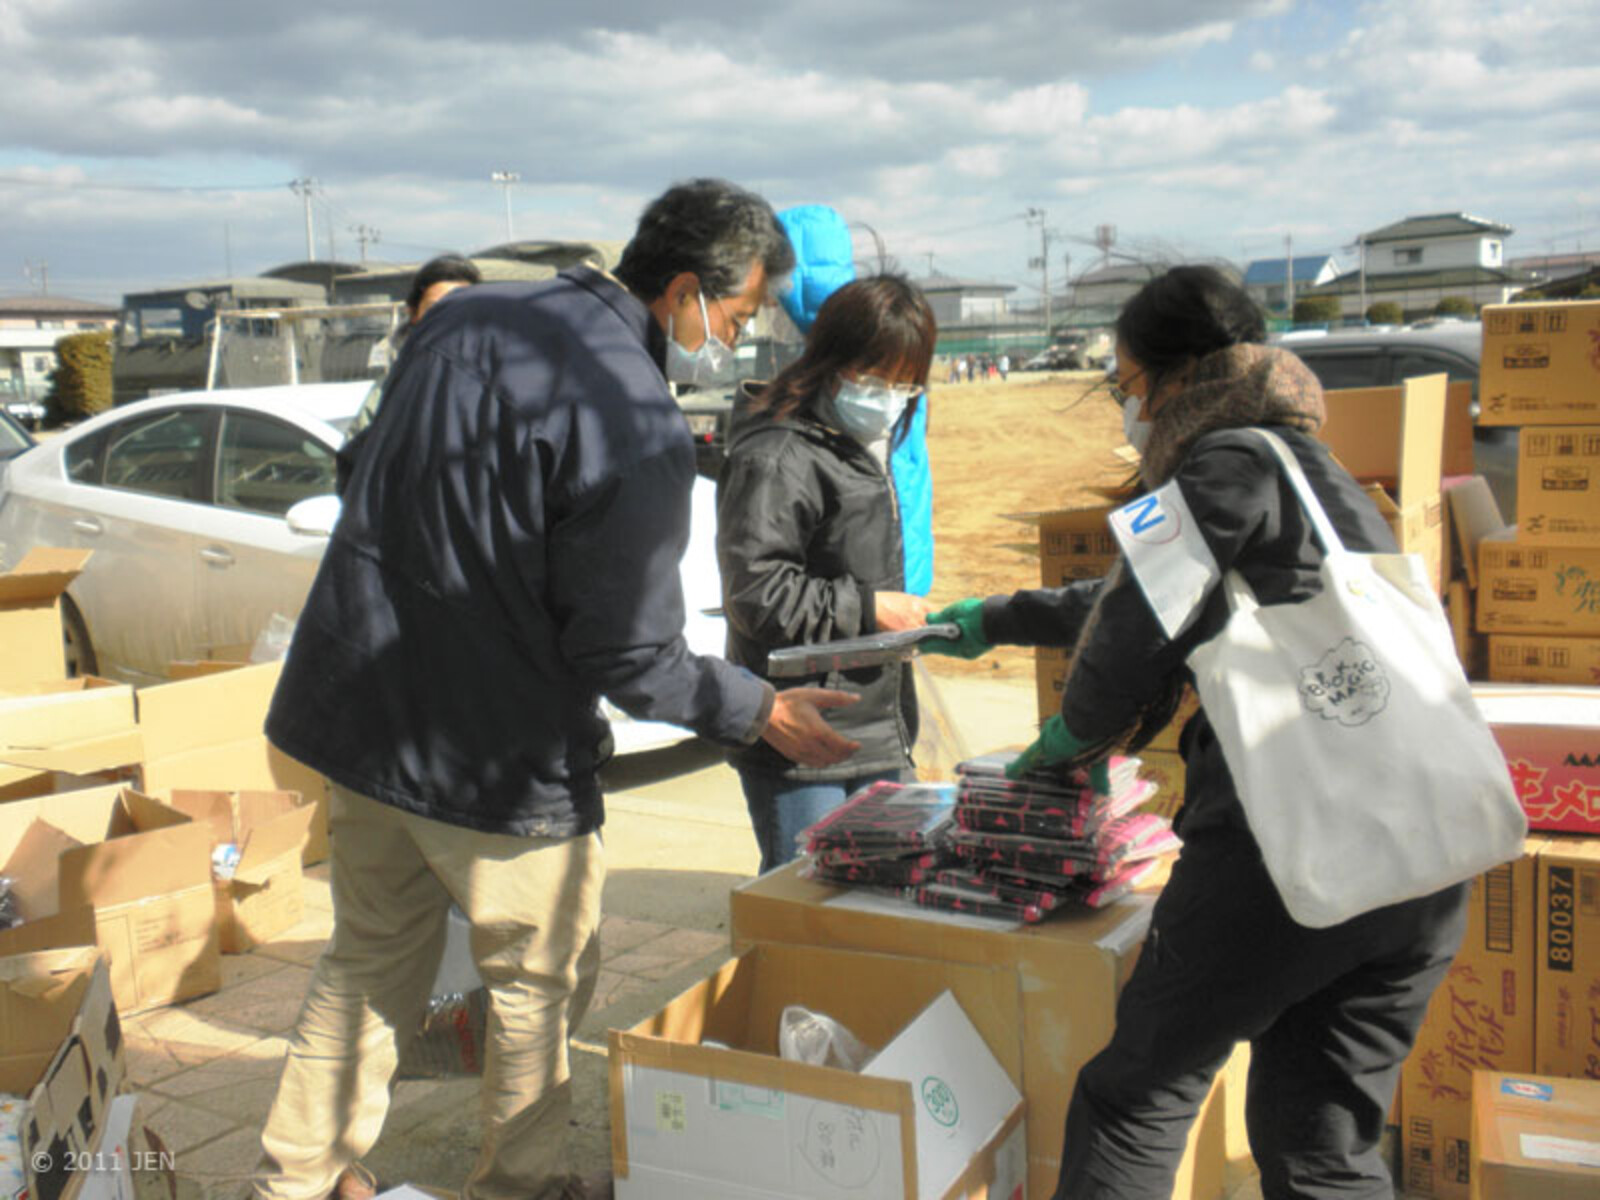 Der ASB arbeitet in enger Kooperation mit der japanischen Hilfsorganisation JEN. Zu Beginn wurden an insgesamt 500 Haushalte (etwa 2.000 Menschen) Nahrungsmittel, Trinkwasser, Bekleidung, Decken und Hygieneartikel verteilt. Zurzeit plant der ASB mit seine